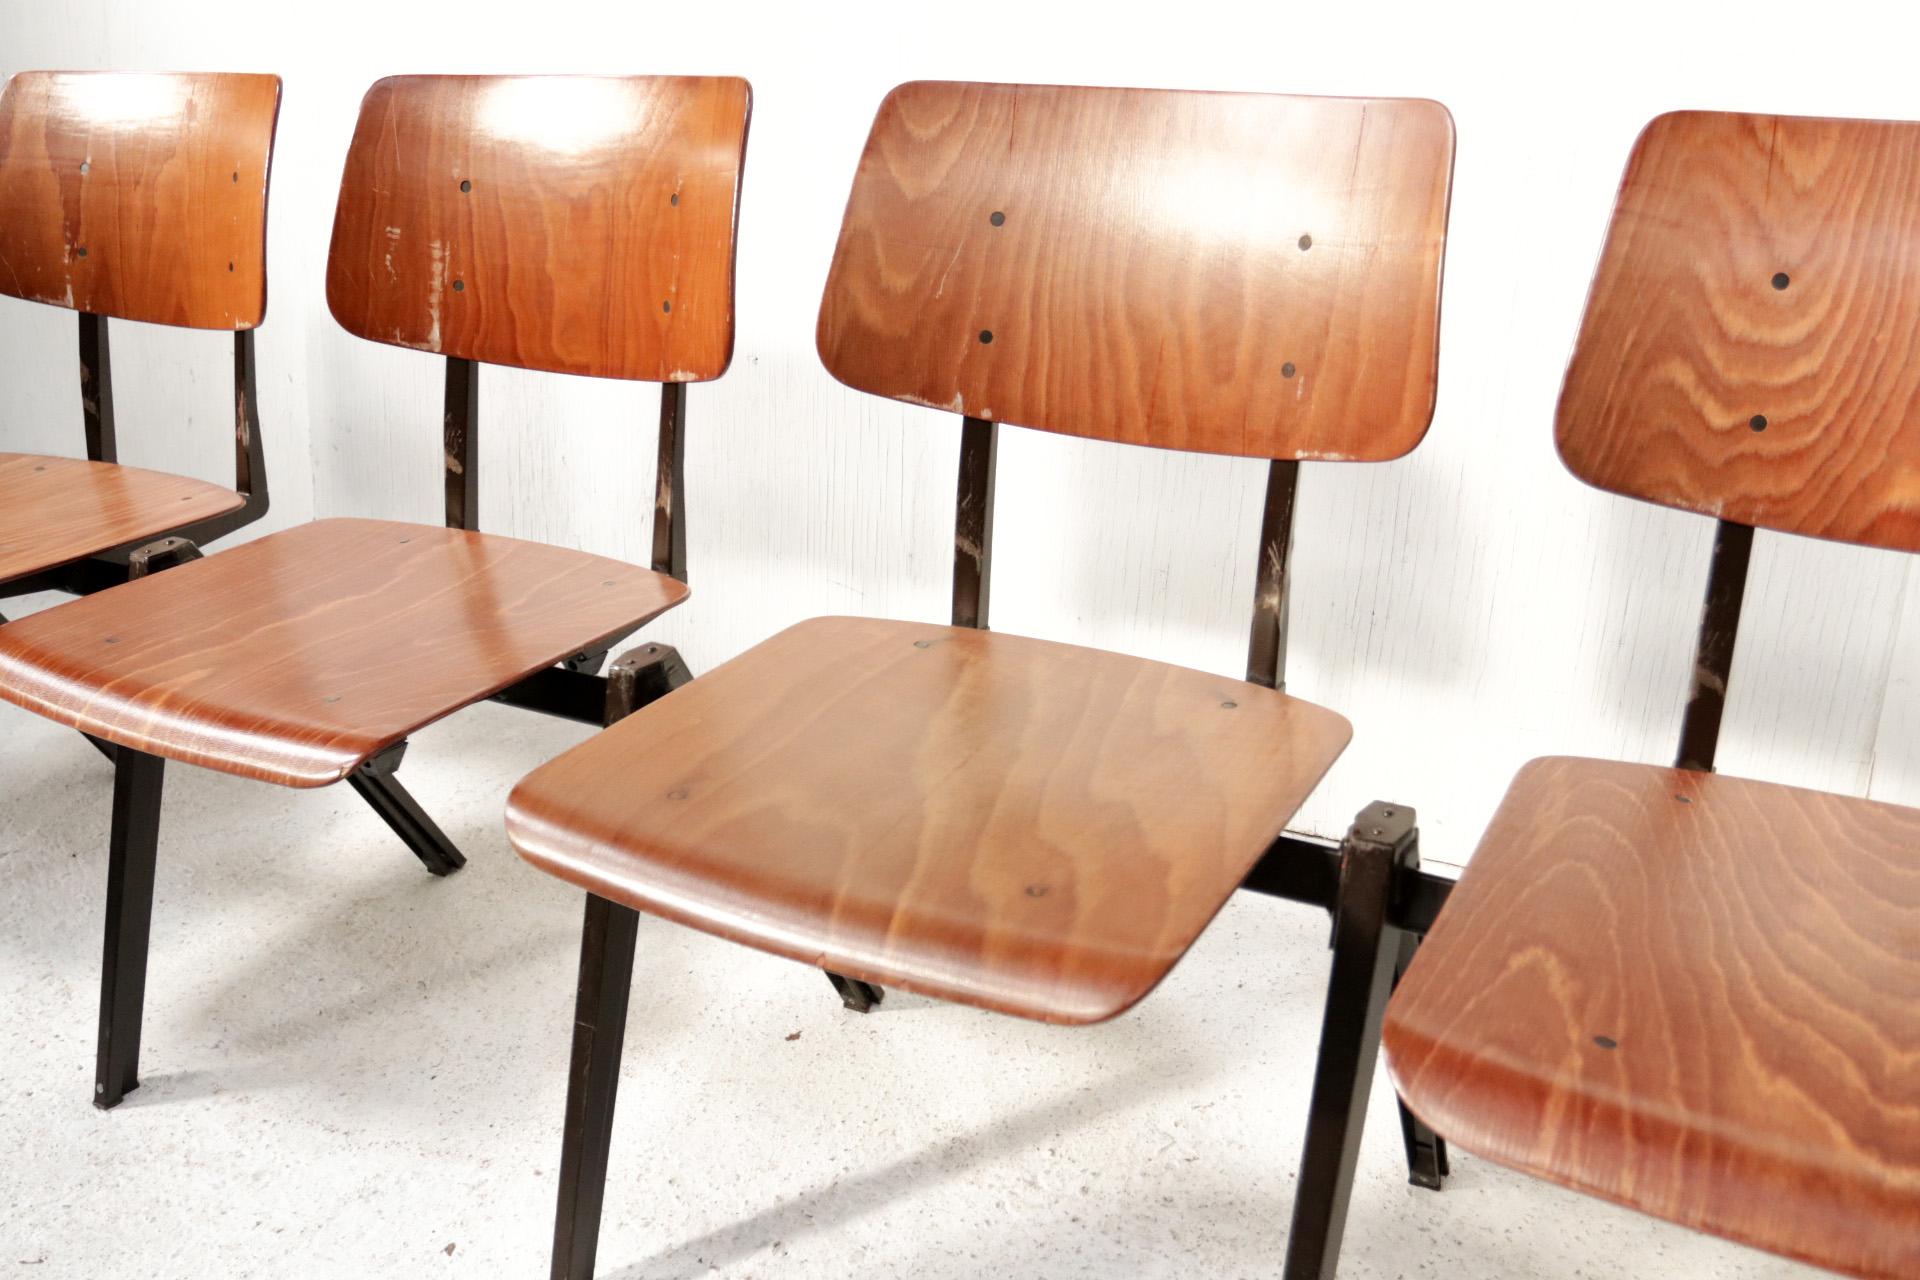 Grand lot de chaises d'école empilables et commutables Original S21 fabriquées par Galvanitas dans les années 60 et 70 dans le style des designs de Friso Kramer, Wim Rietveld et Jean Prouvé.
Nous les vendons par lot de 10 pièces.
Ce qui rend ces